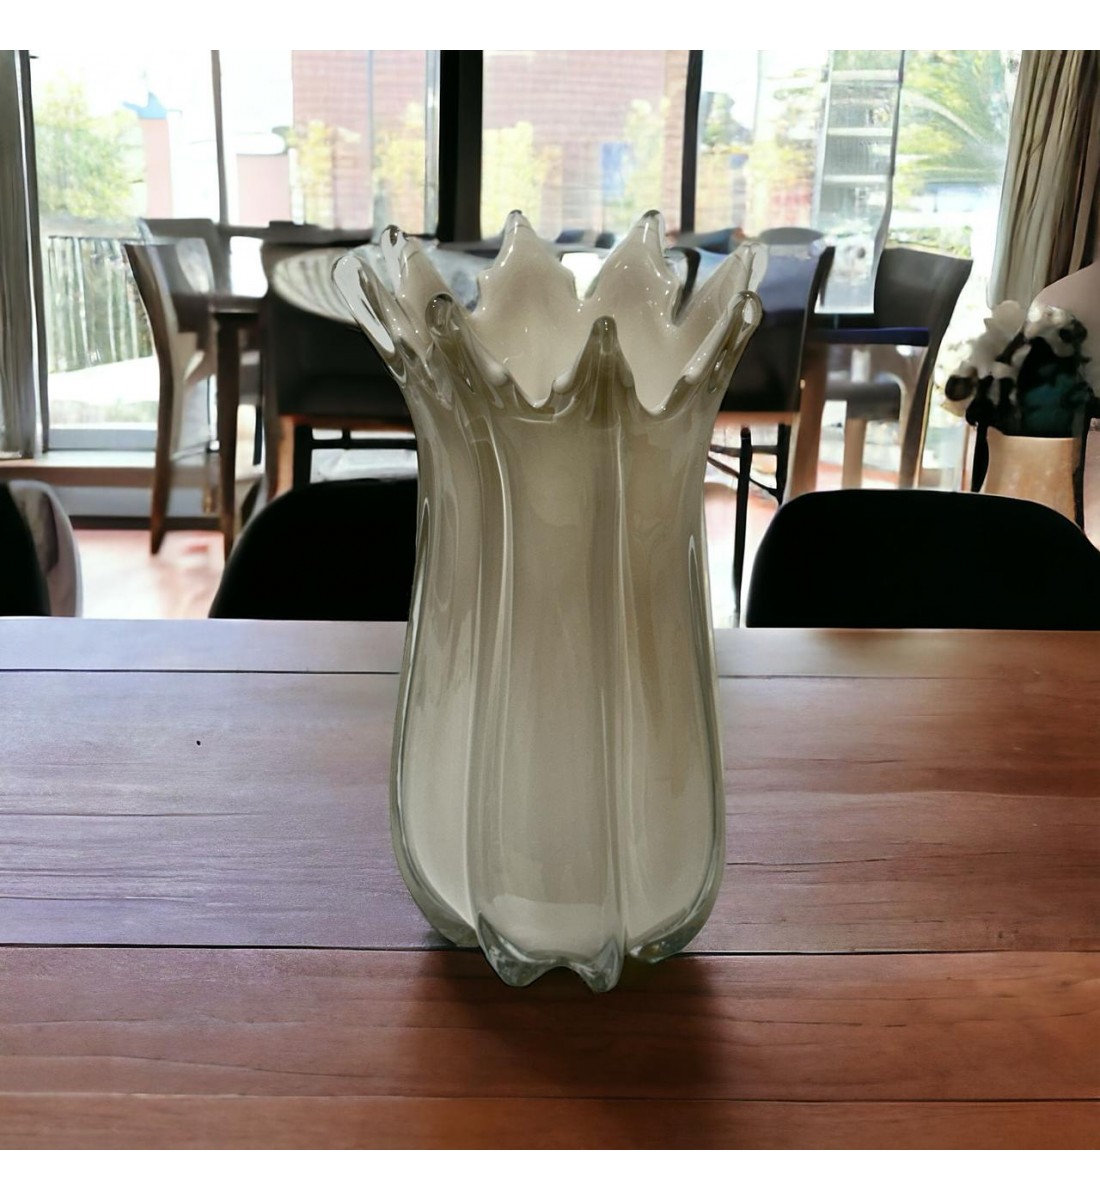  مزهرية زجاج عضوية من كوبي بيج 33××18×18سم 